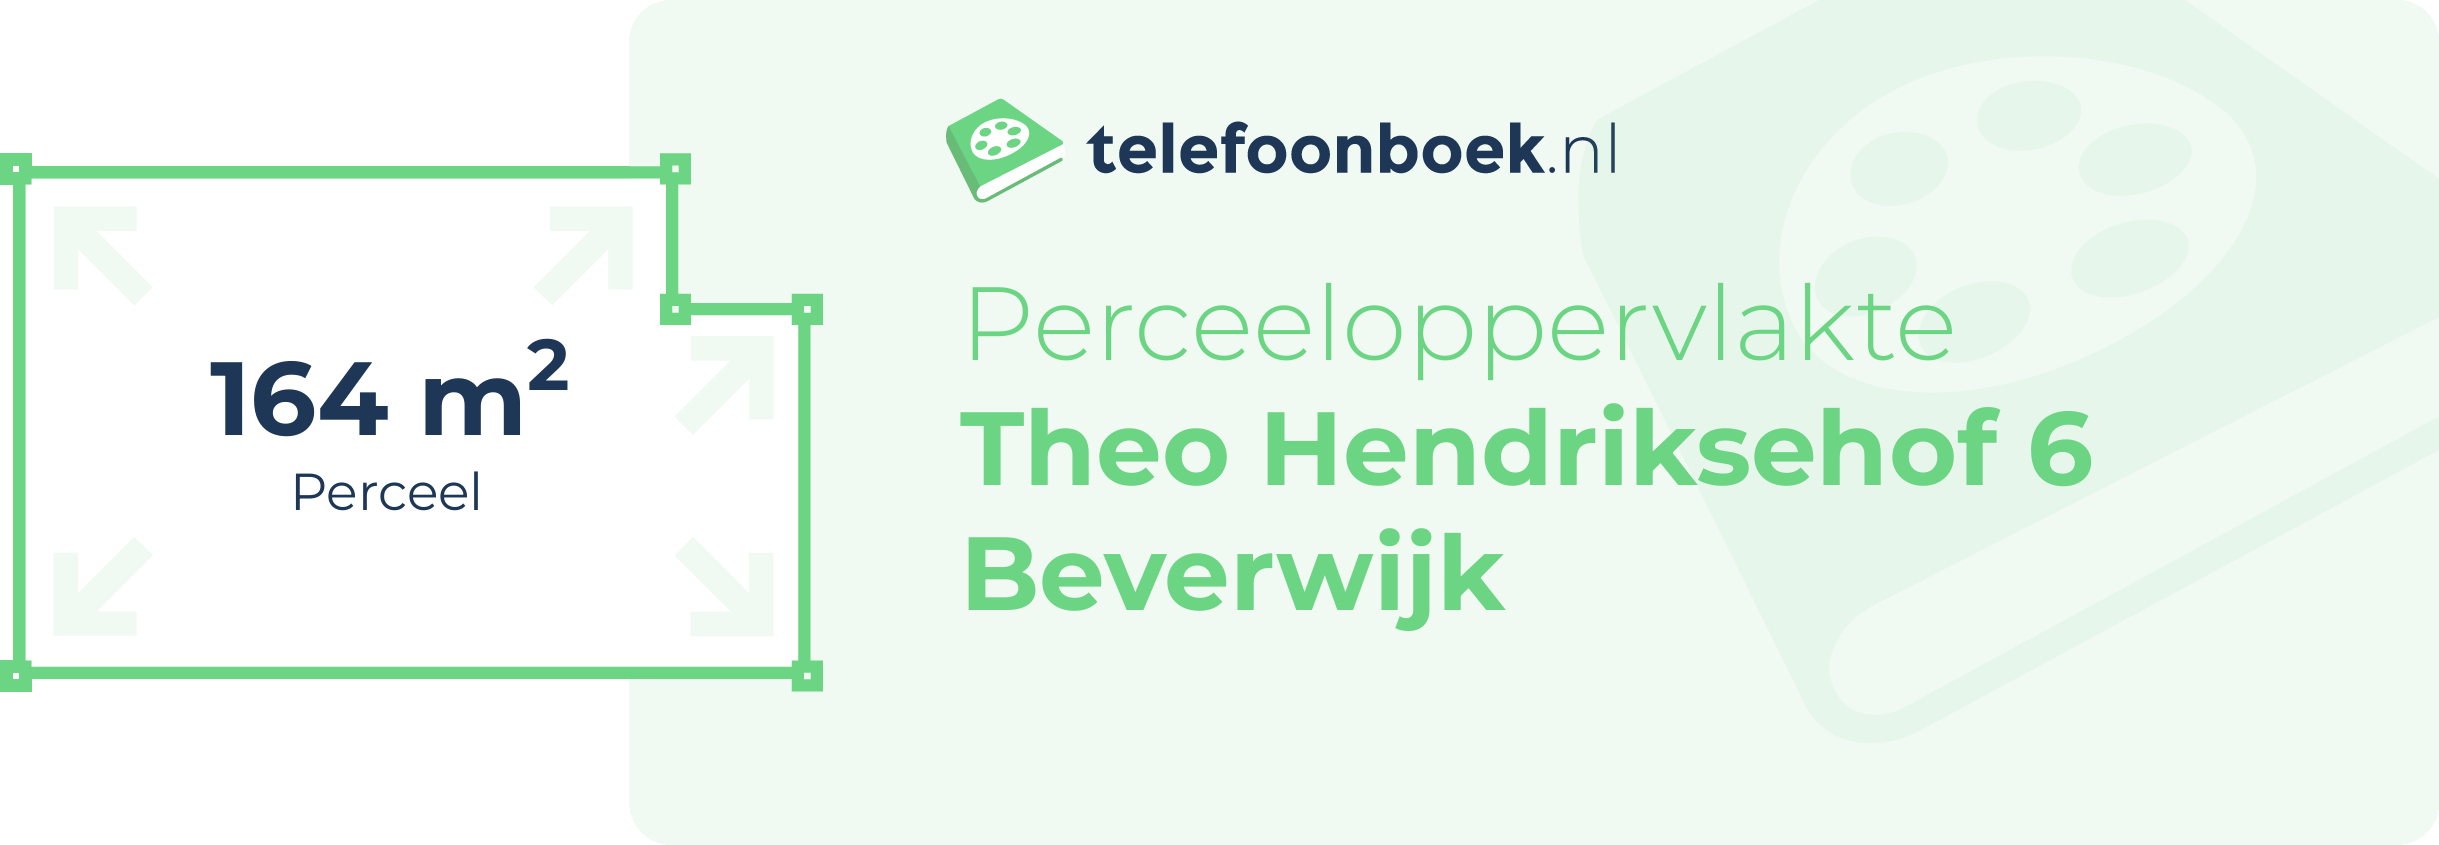 Perceeloppervlakte Theo Hendriksehof 6 Beverwijk